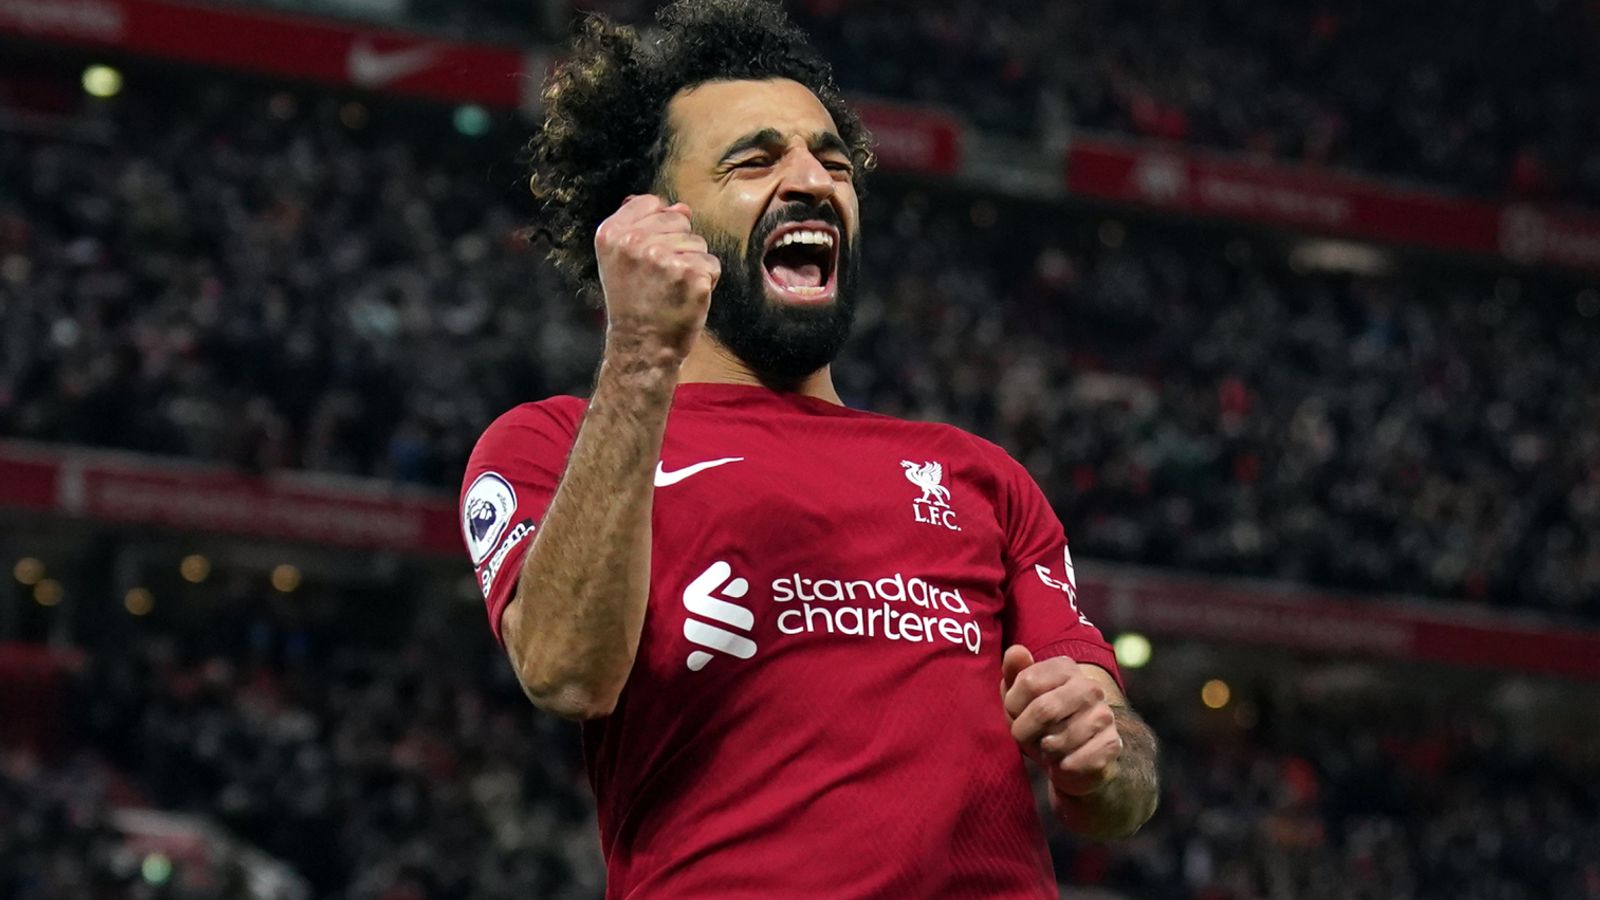 Liverpool 2 a 0 Wolves: gols de Virgil van Dijk e Mohamed Salah colocam os anfitriões a seis pontos dos quatro primeiros |  notícias de futebol